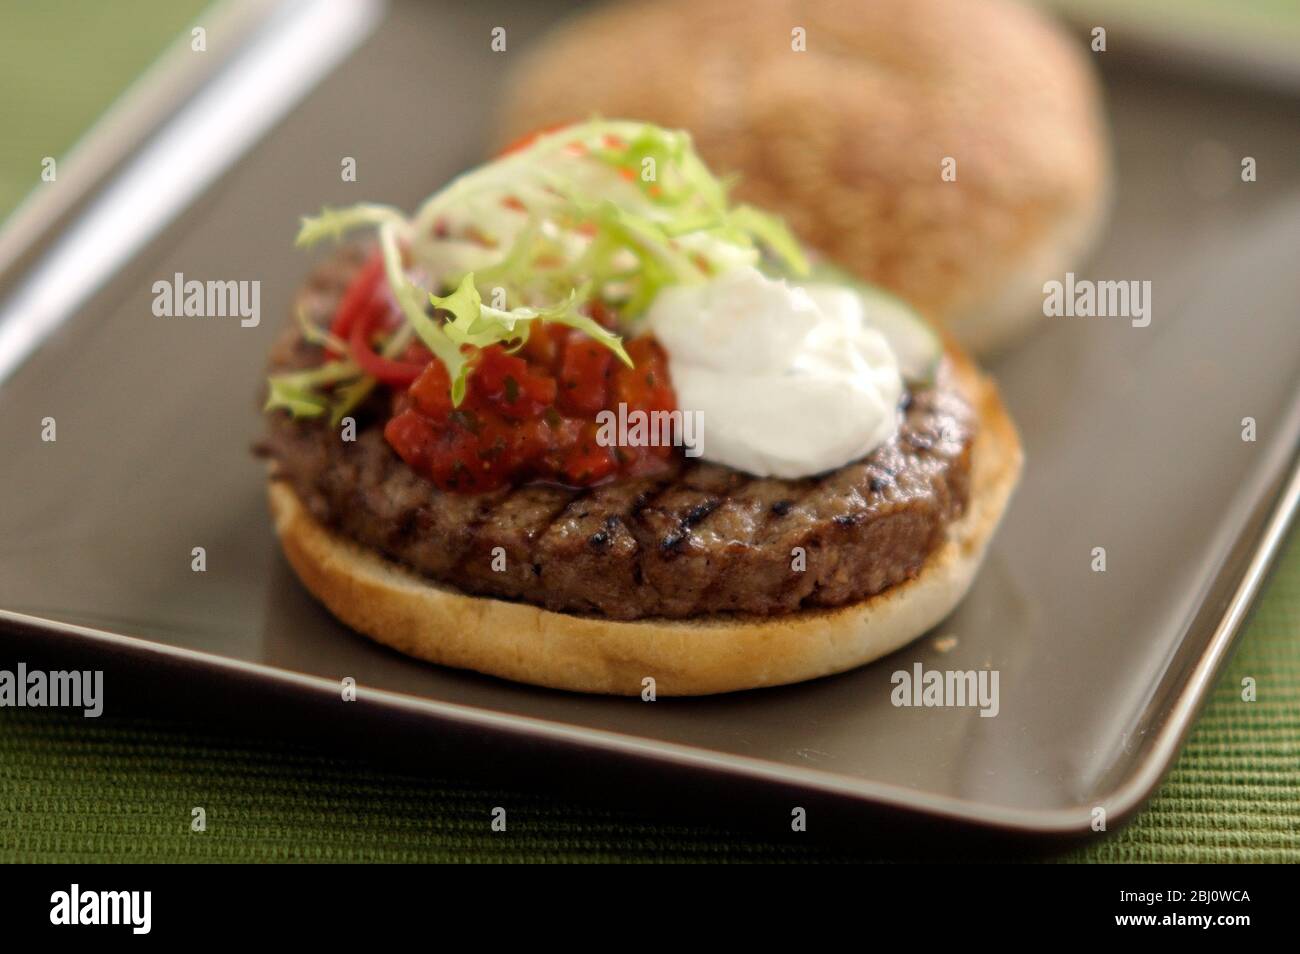 Hamburger alla griglia in panna con insalata di frisee, salsa di pomodoro e panna acida - - Foto Stock